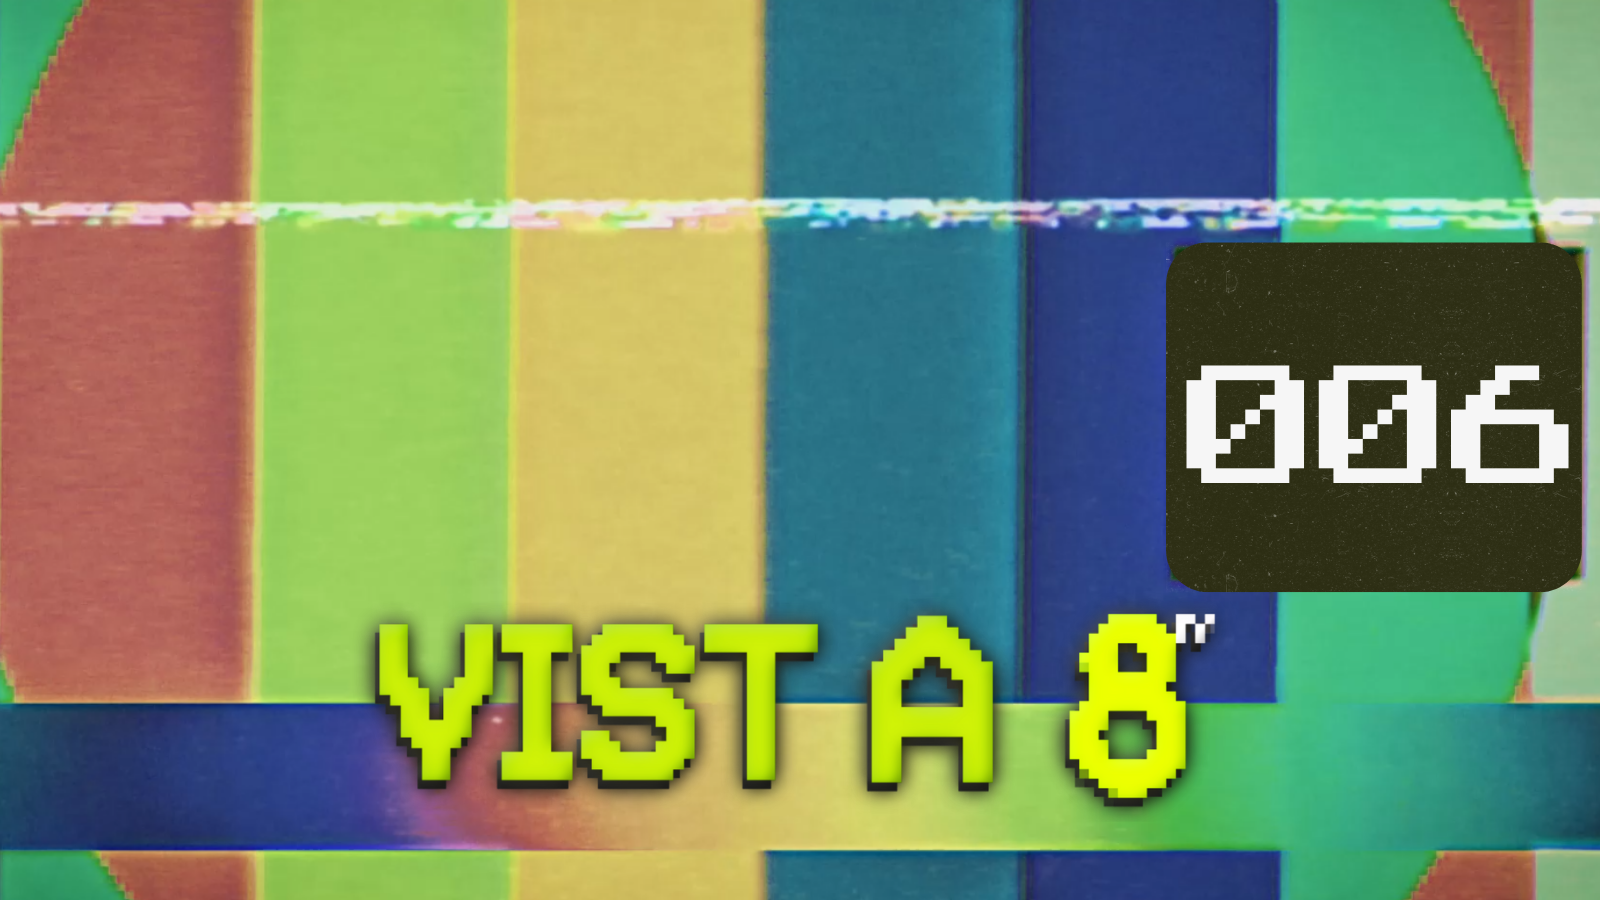 VIST A 8TV - EPISODI 6